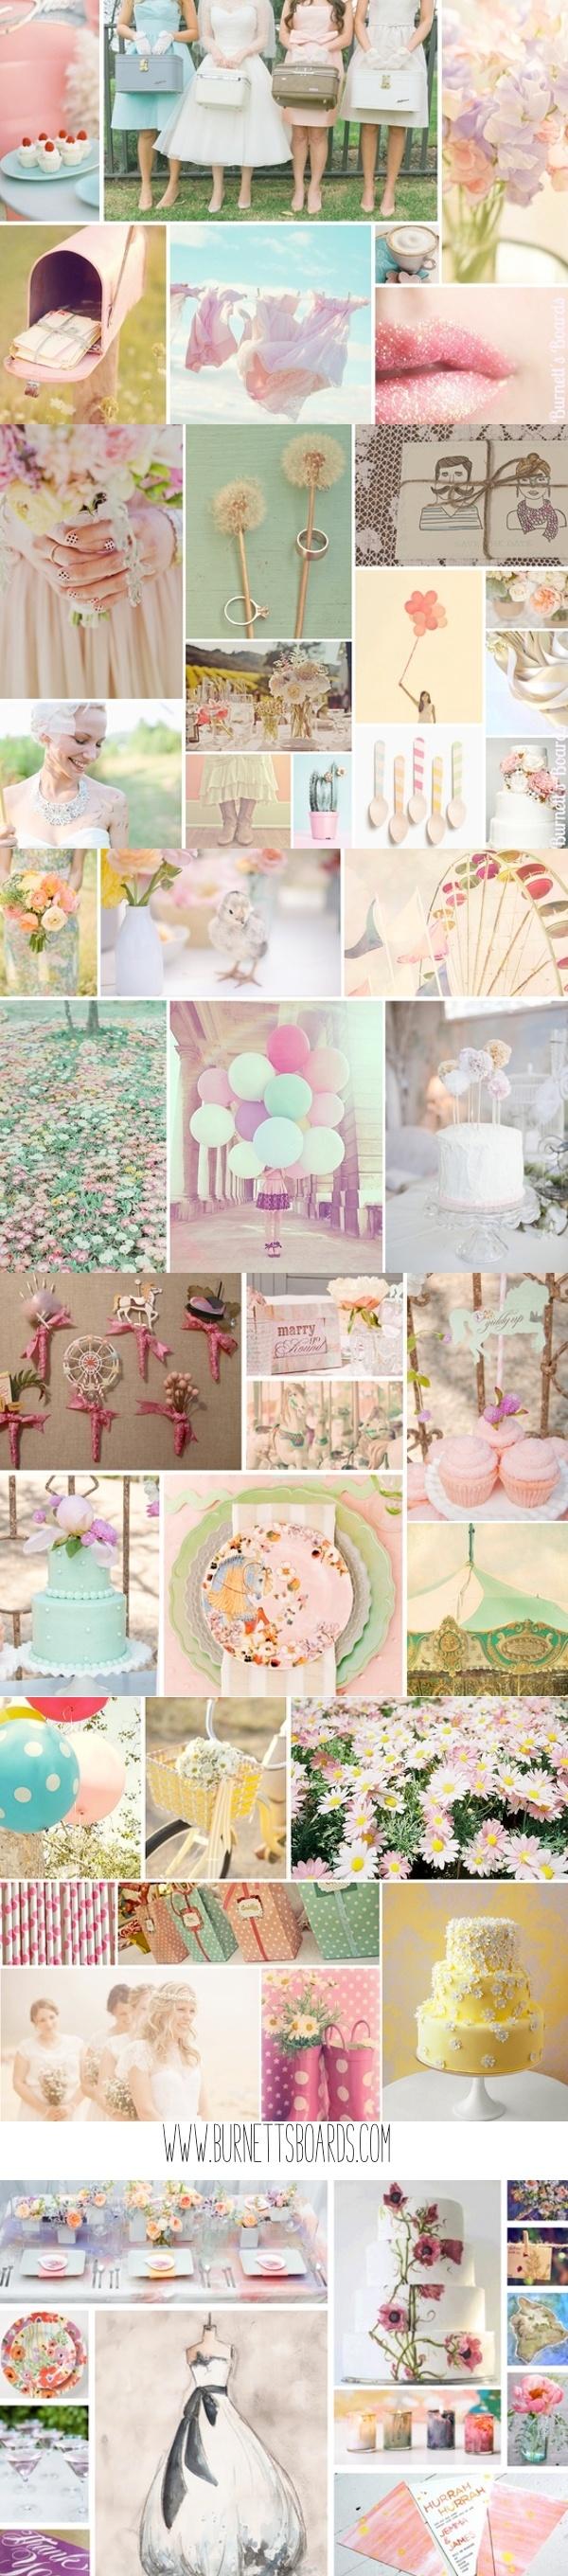 Hochzeit - Pastel Wedding Inspiration Boards